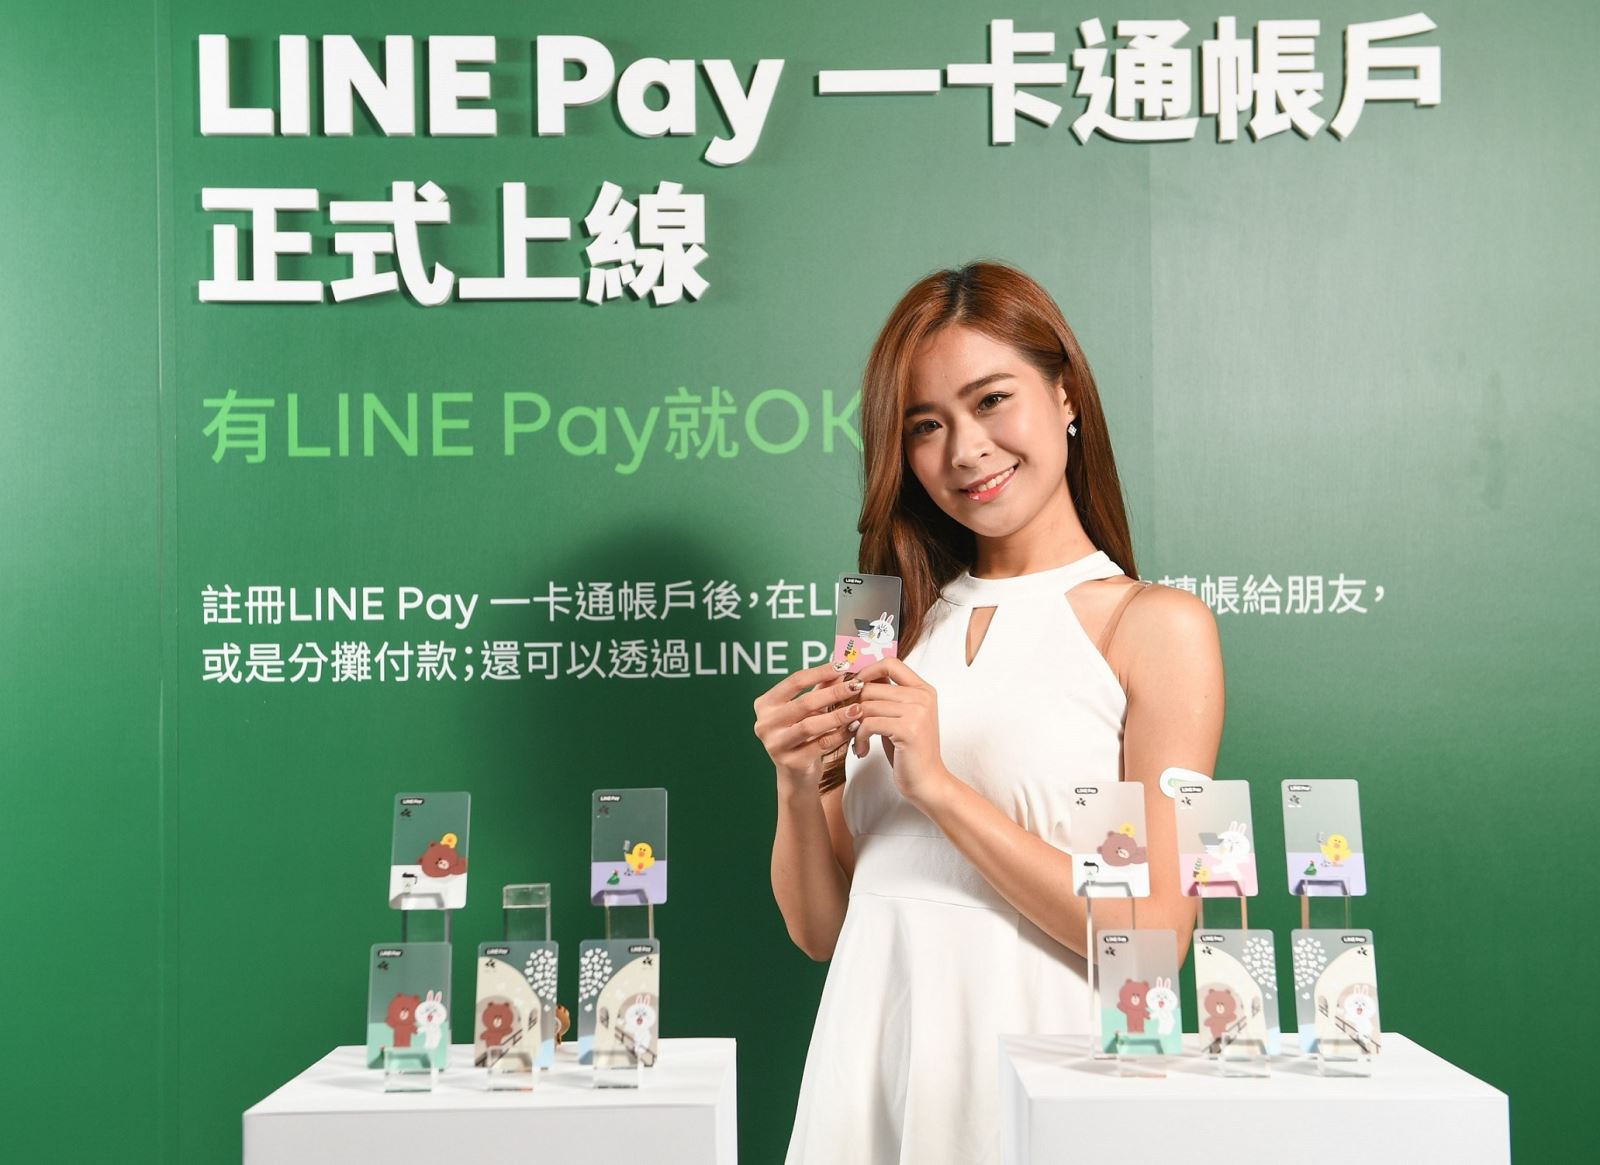 「LINE Pay 一卡通帳戶」正式上線2